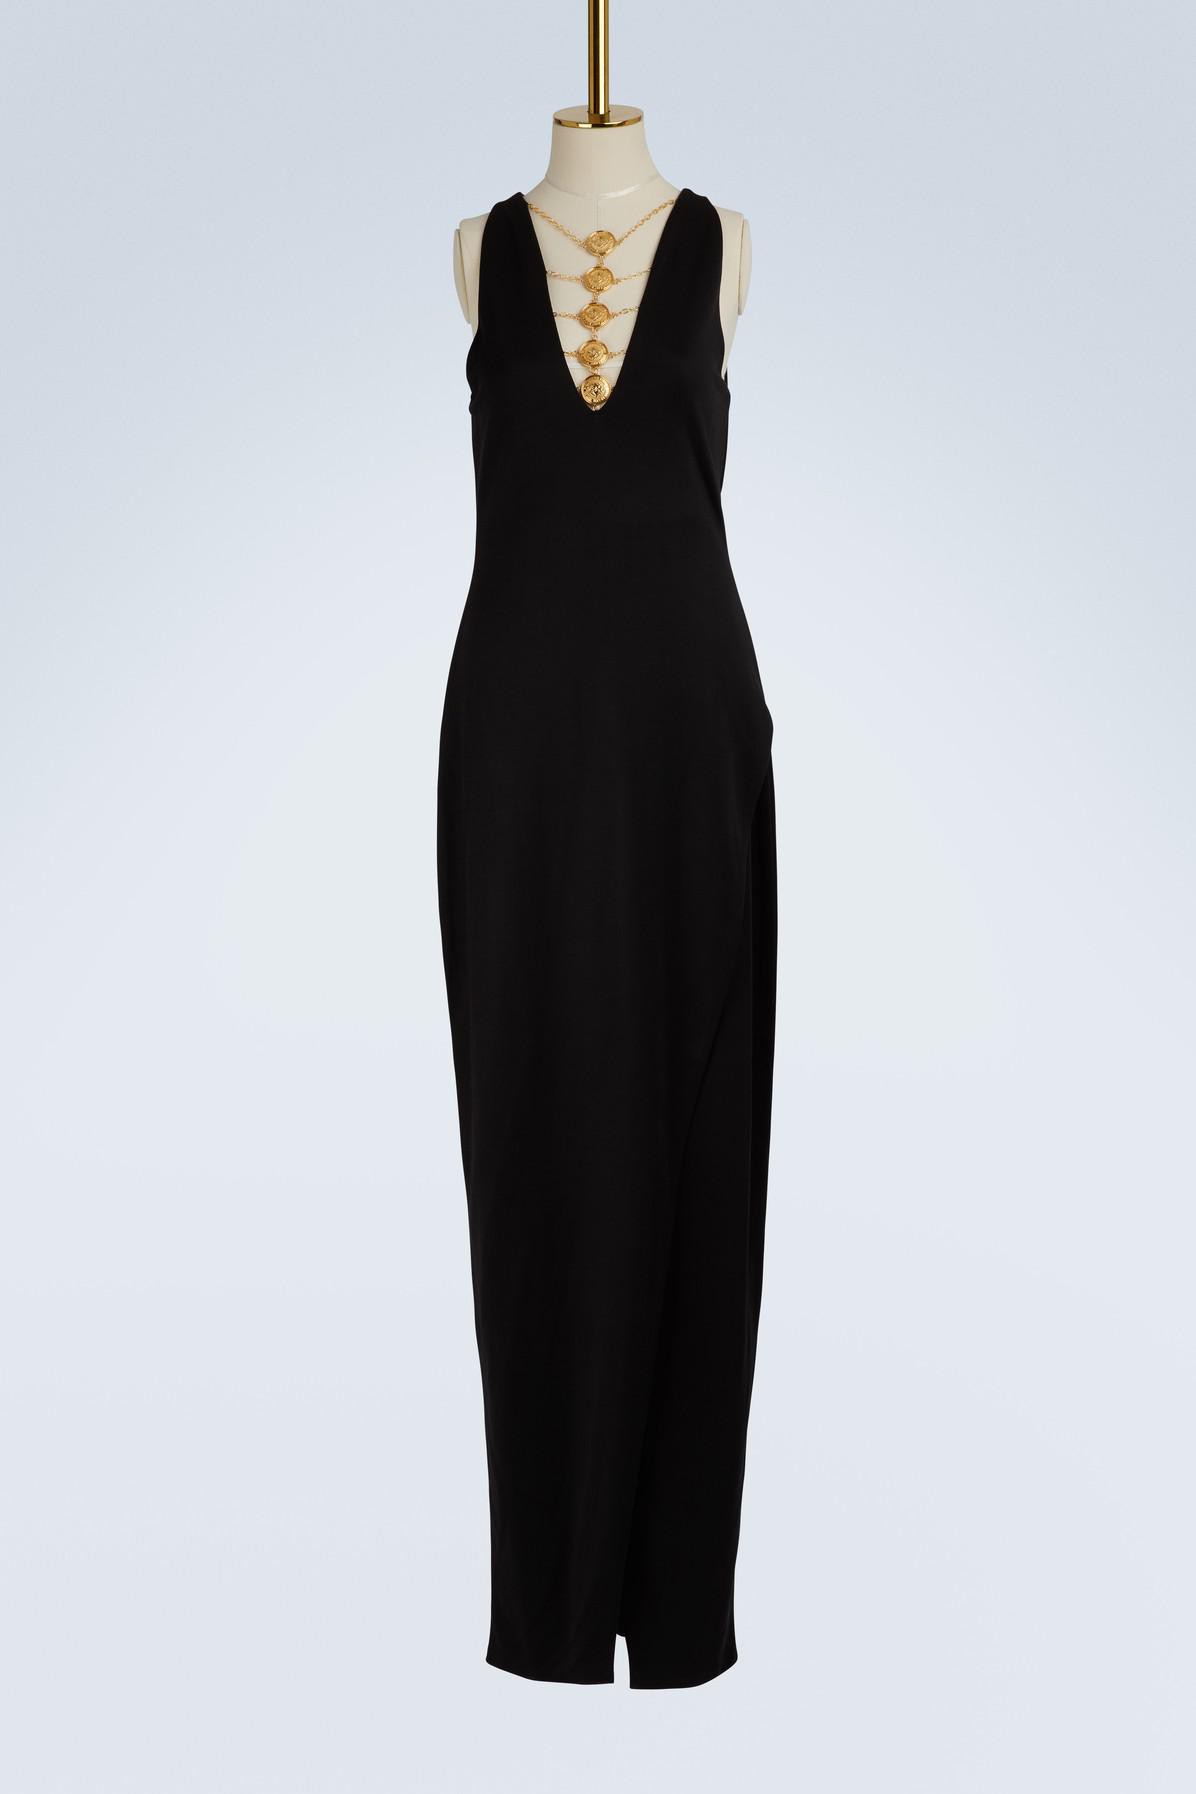 balmain-noir-c0100-coin-jewel-maxi-dress